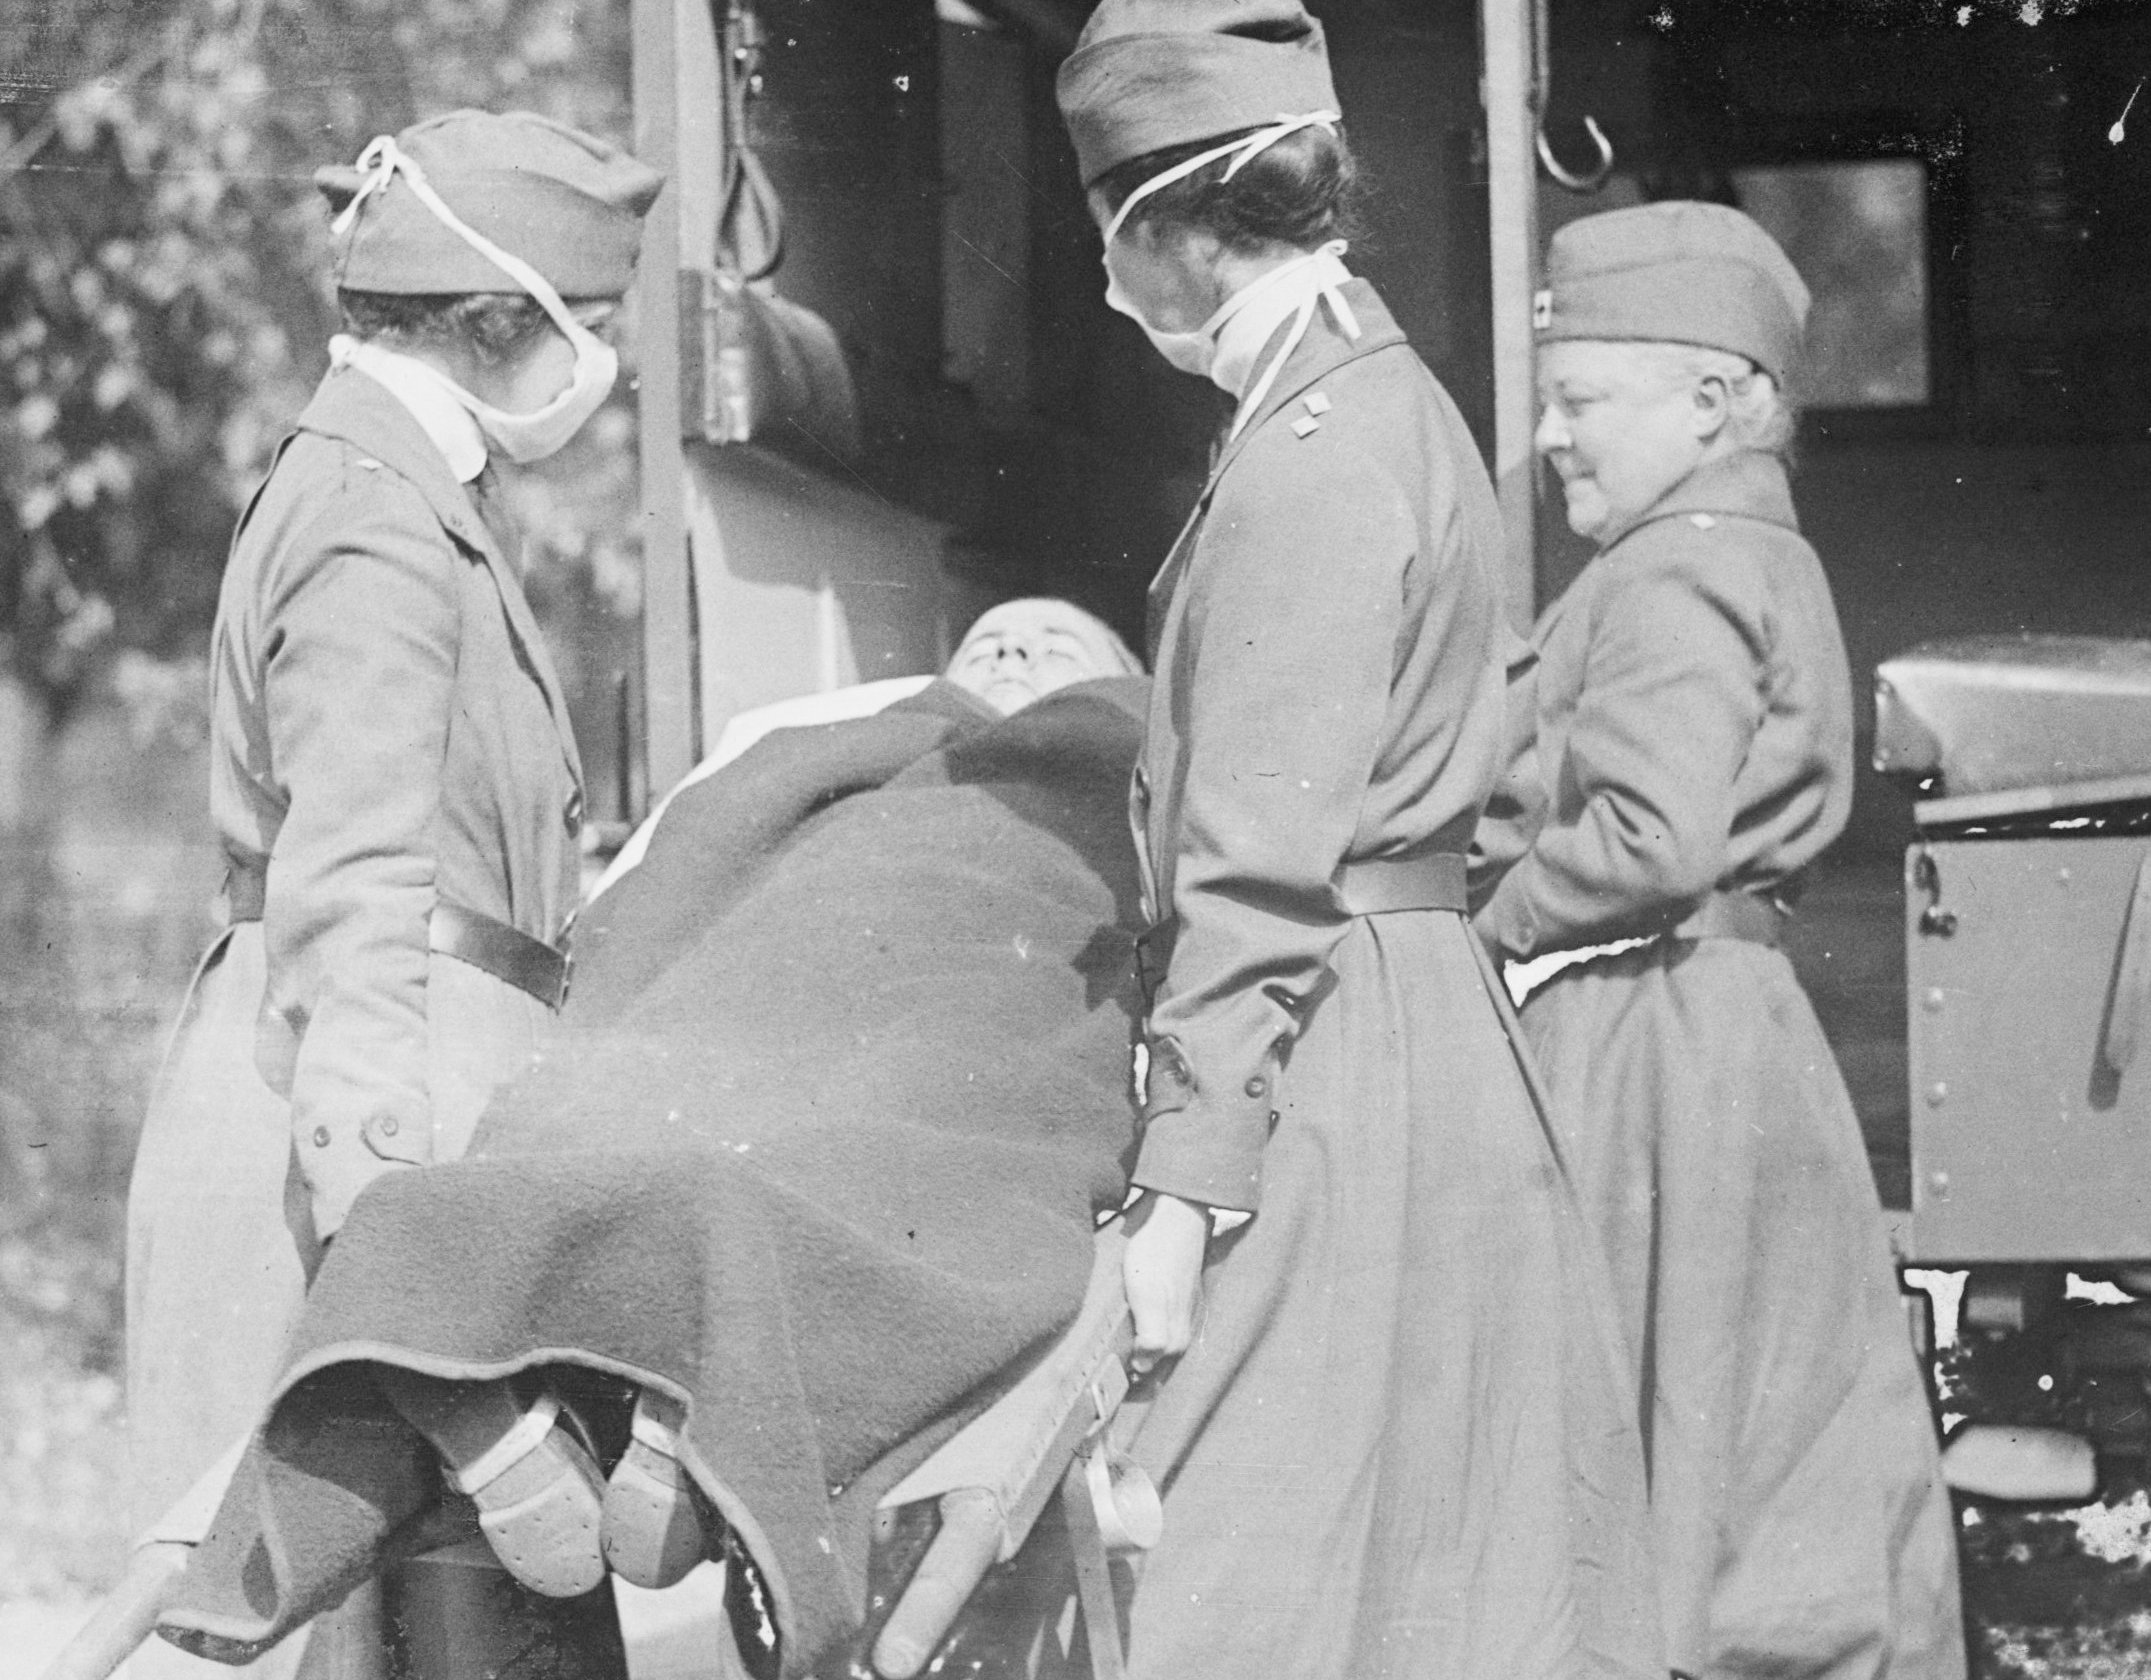 Durante a Gripe Espanhola, em 1918, foram adotadas medidas sanitárias semelhantes às de hoje, como o uso de máscara e a realização de atividades ao ar livre